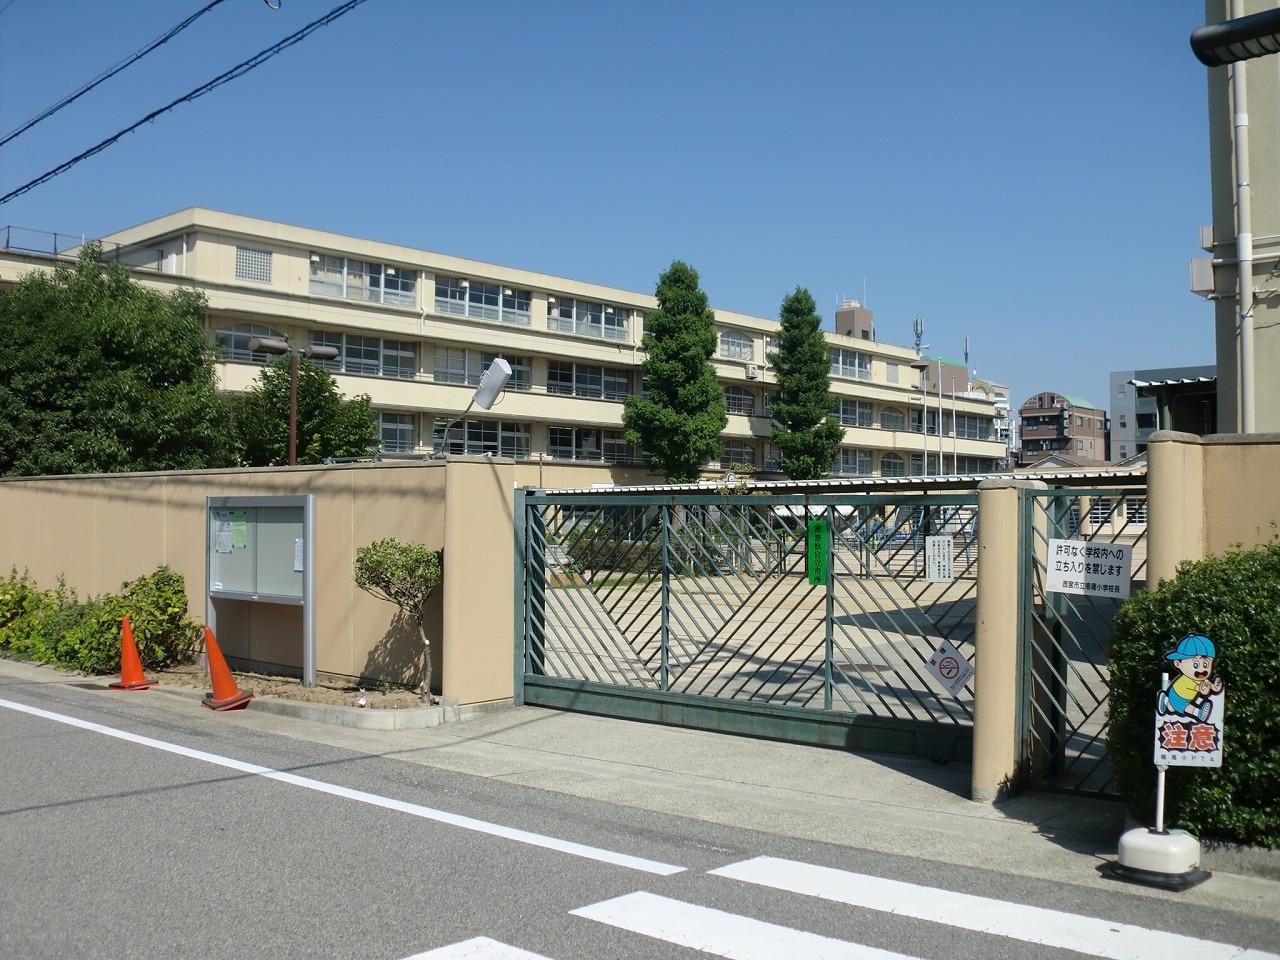 Primary school. 523m to Nishinomiya Municipal Naruo elementary school (elementary school)